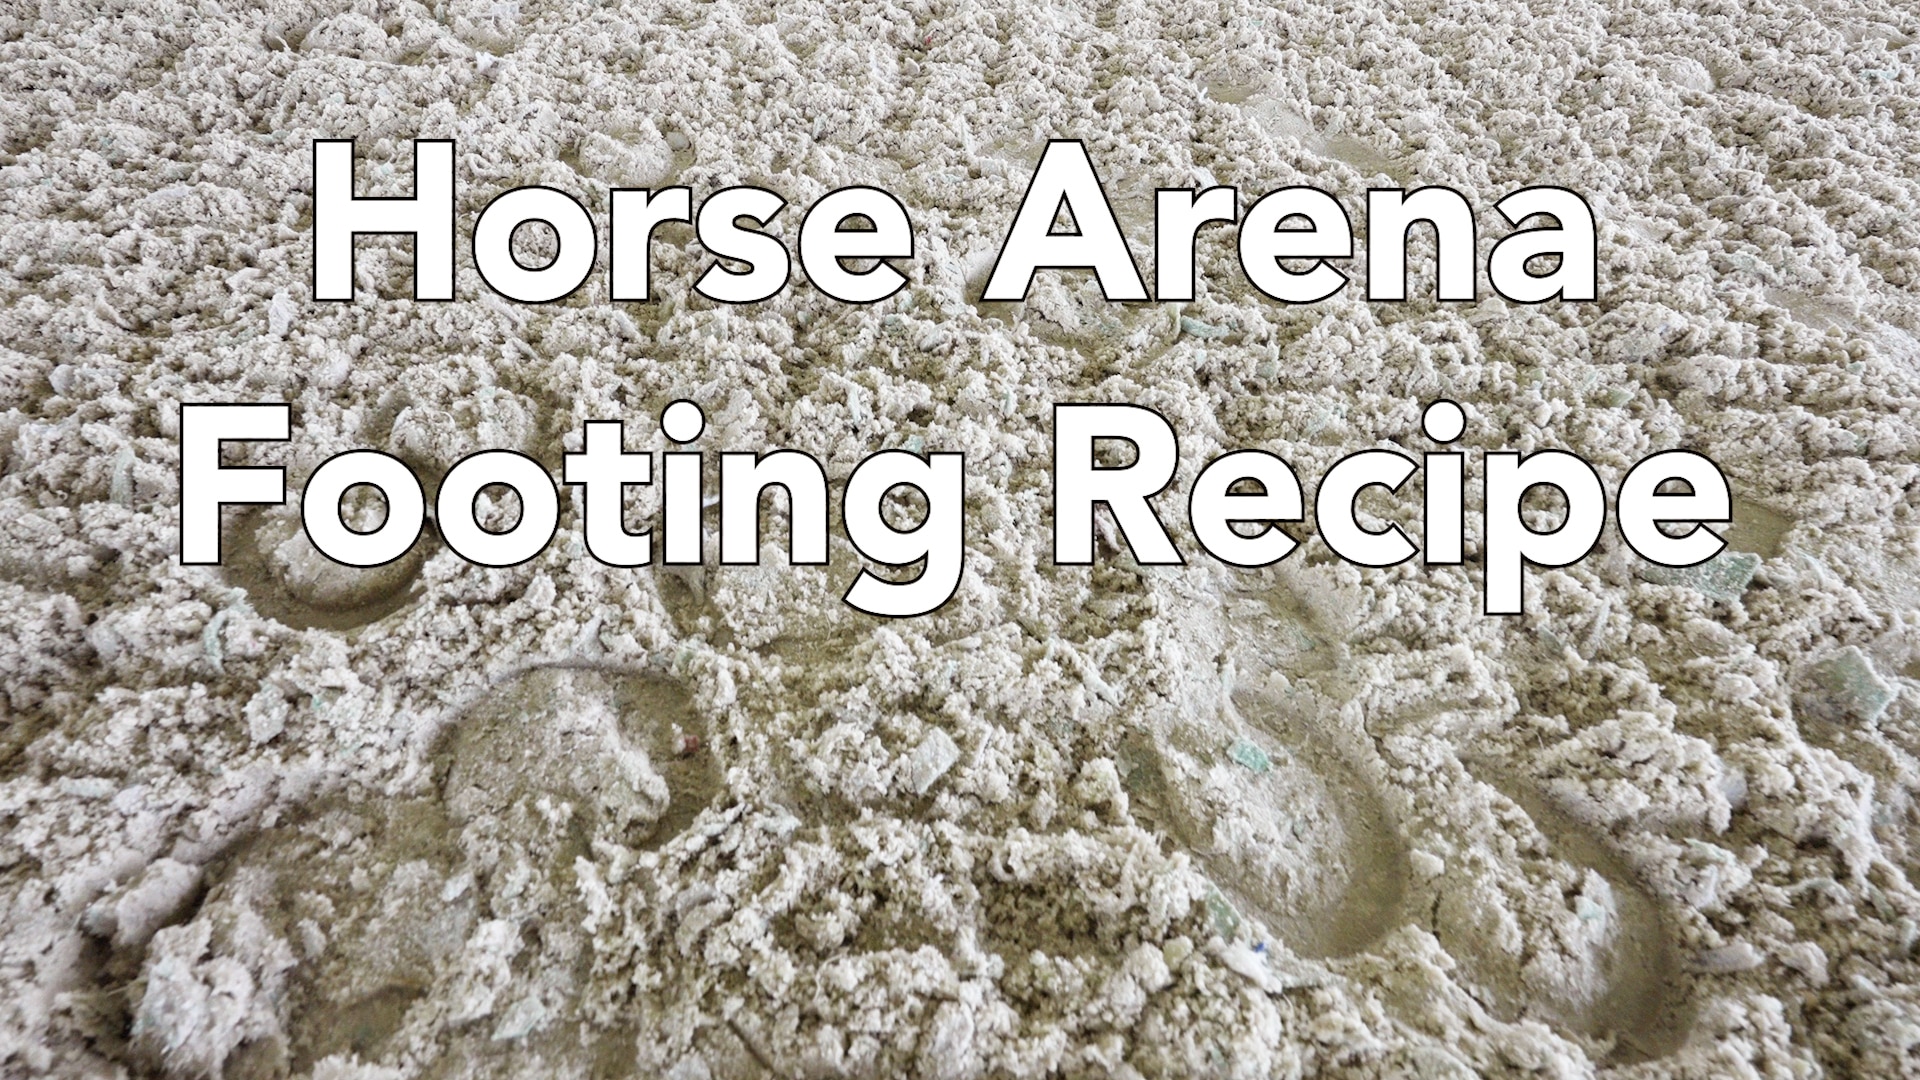 Horse Arena footing recipe